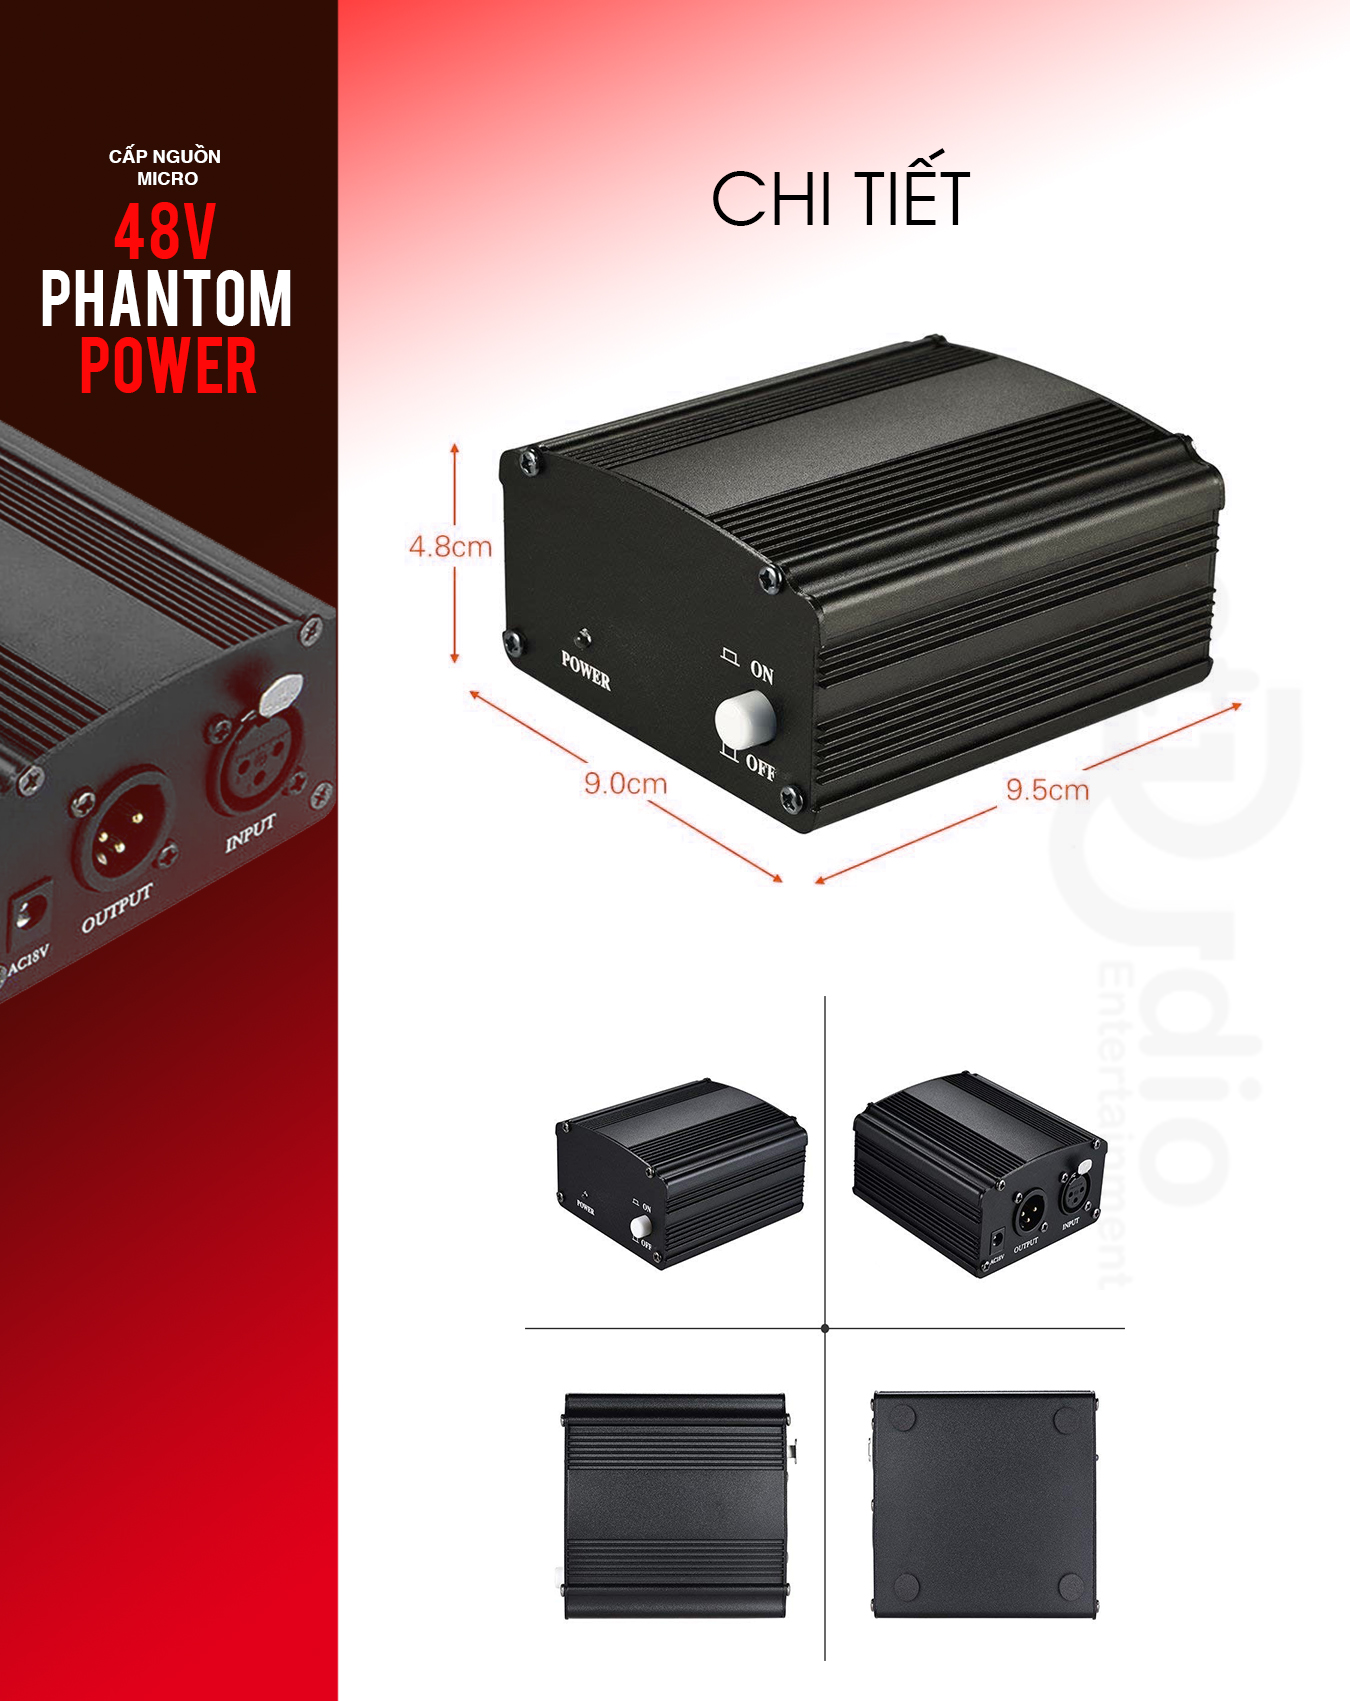 Nguồn phantom 48V - nguồn cung cấp điện cho micro thu âm Condenser